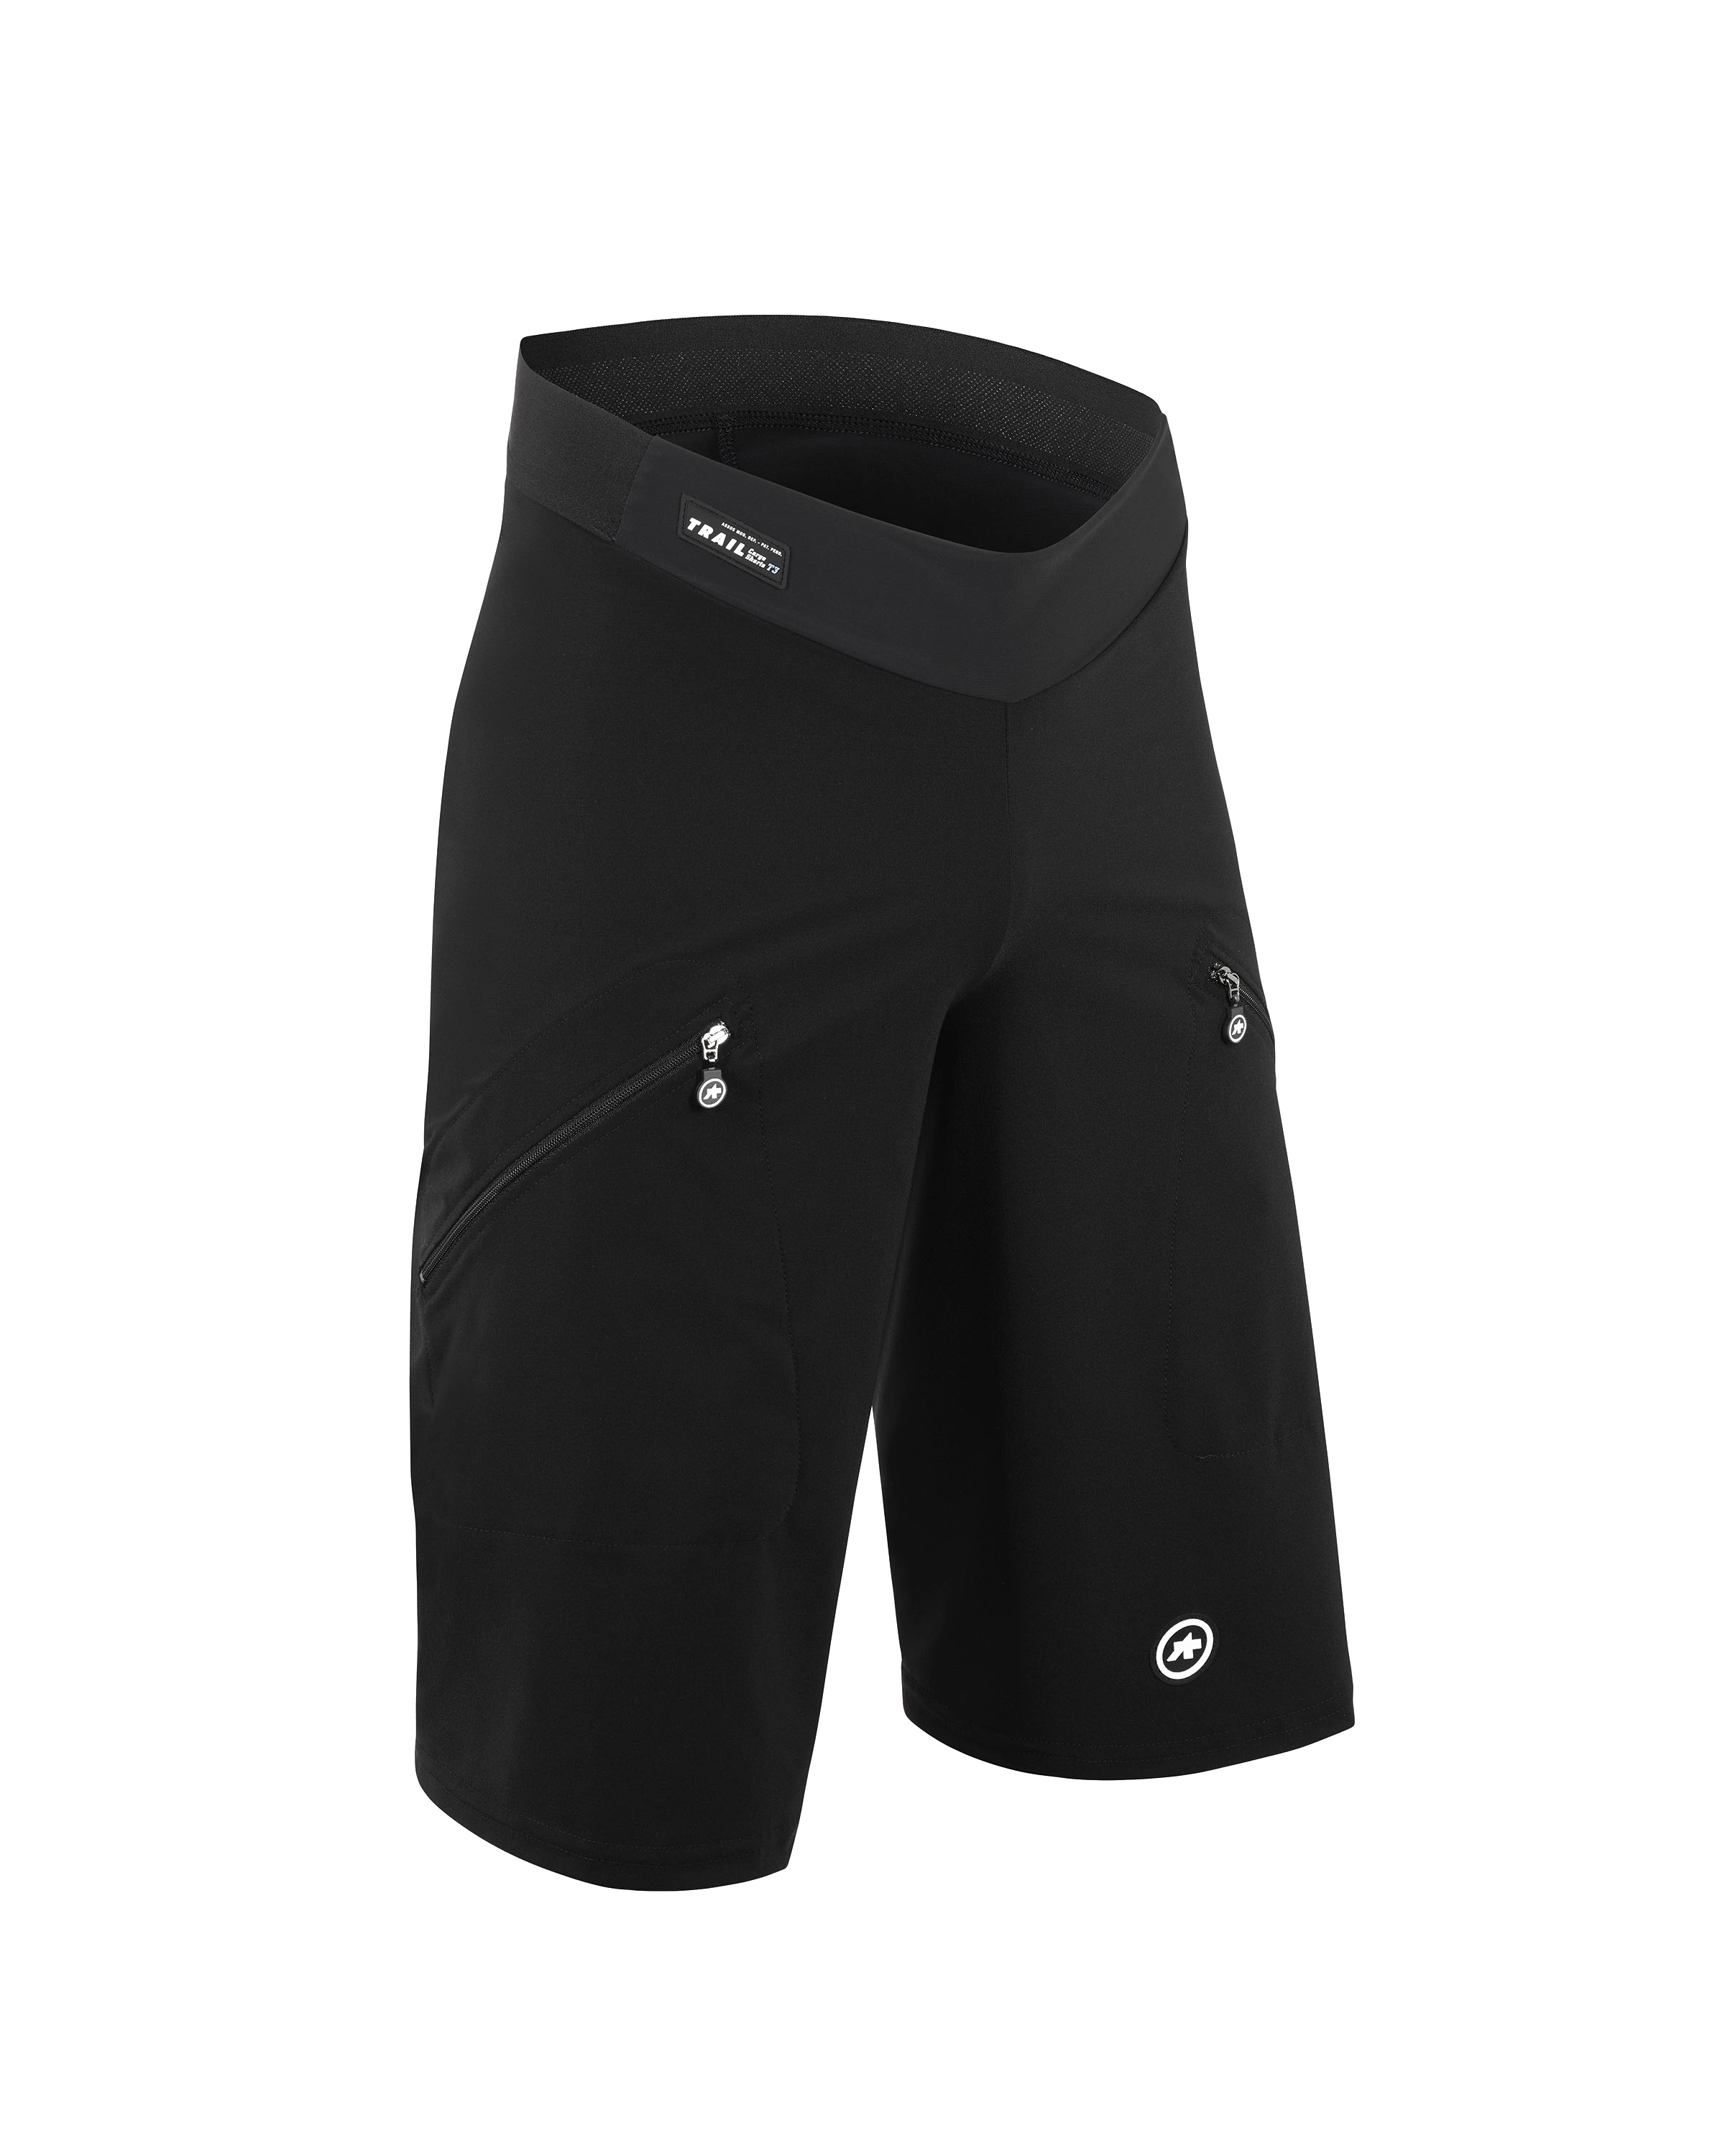 Велошорты ASSOS Trail Cargo Shorts T3 Black Series, мужские, черные, XL фото 